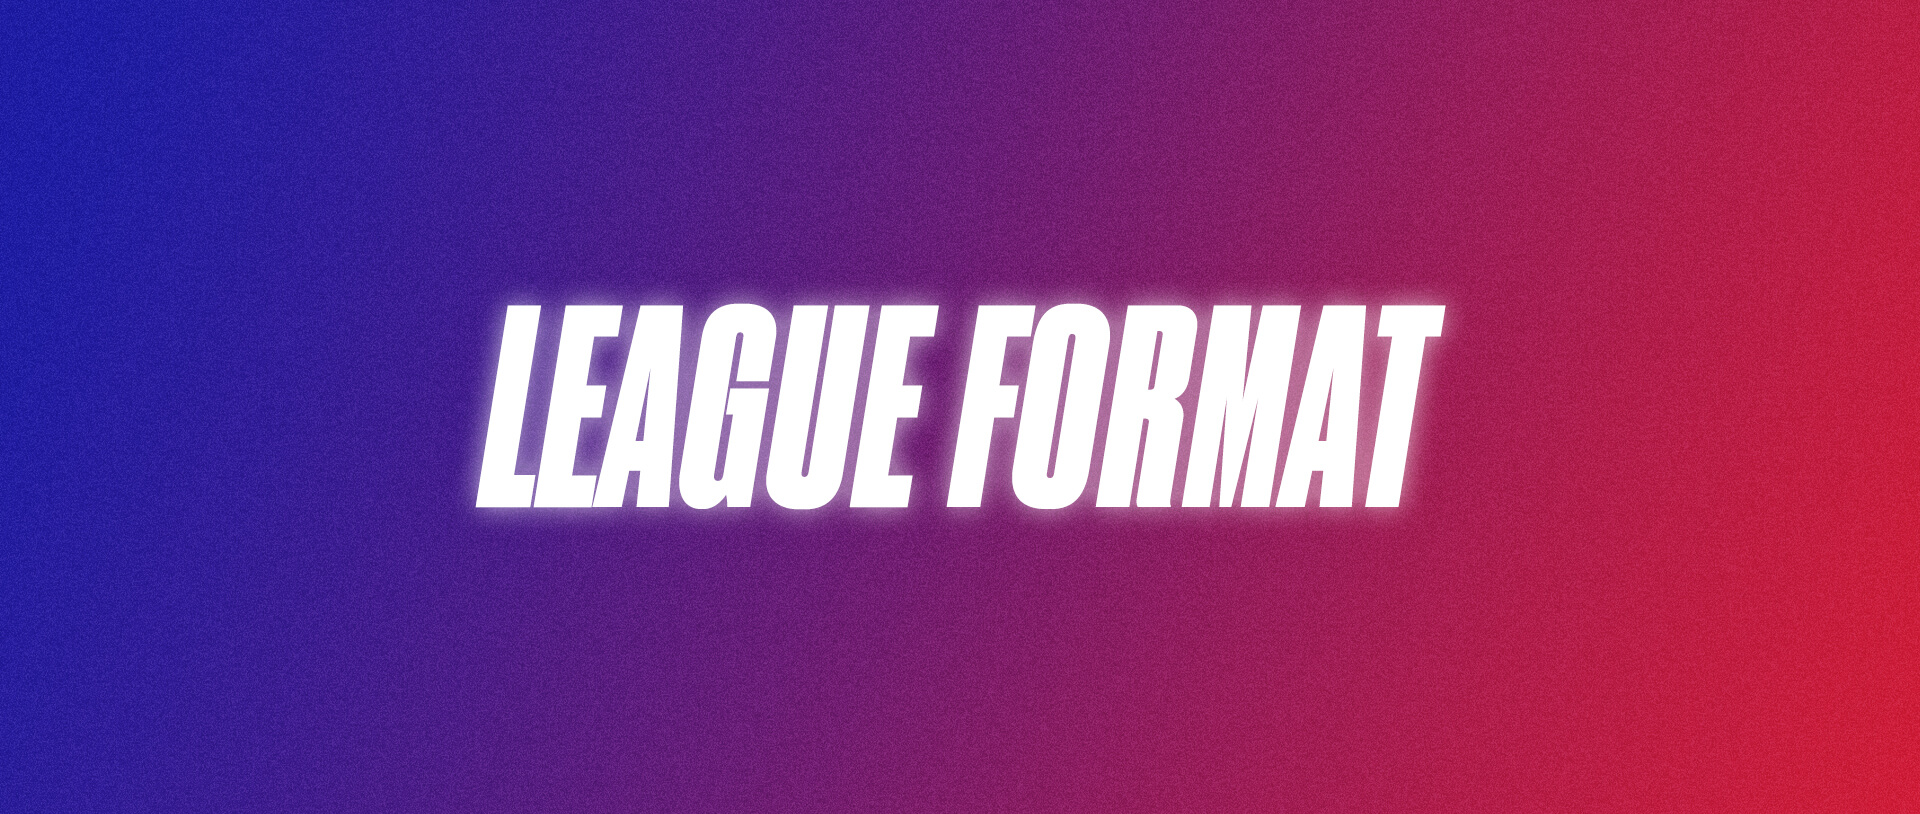 WPSL PRO League Format